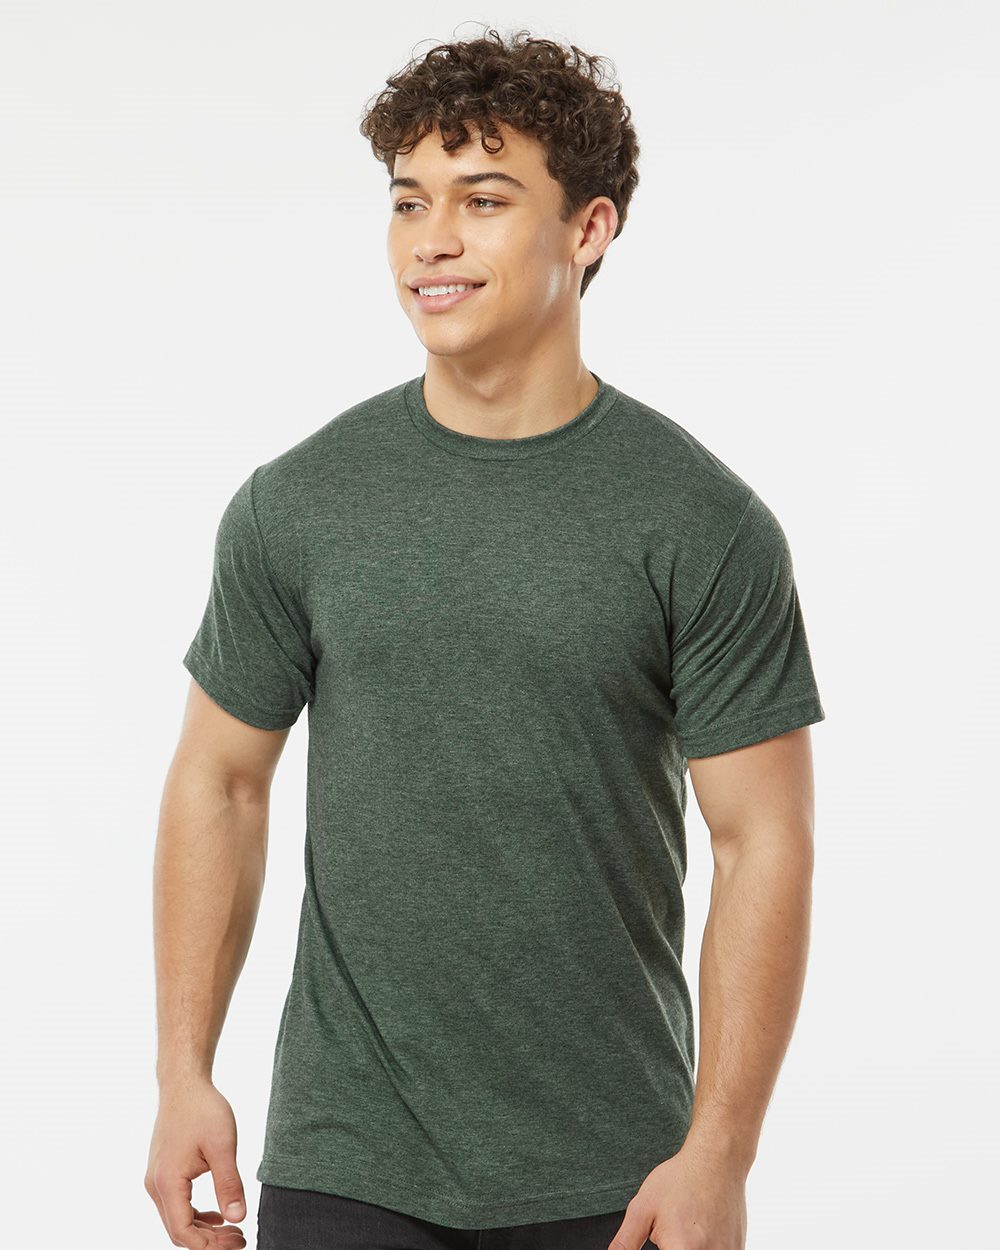 Louisville Black Caps - Unisex T-Shirt, White / Adult M / T-Shirt